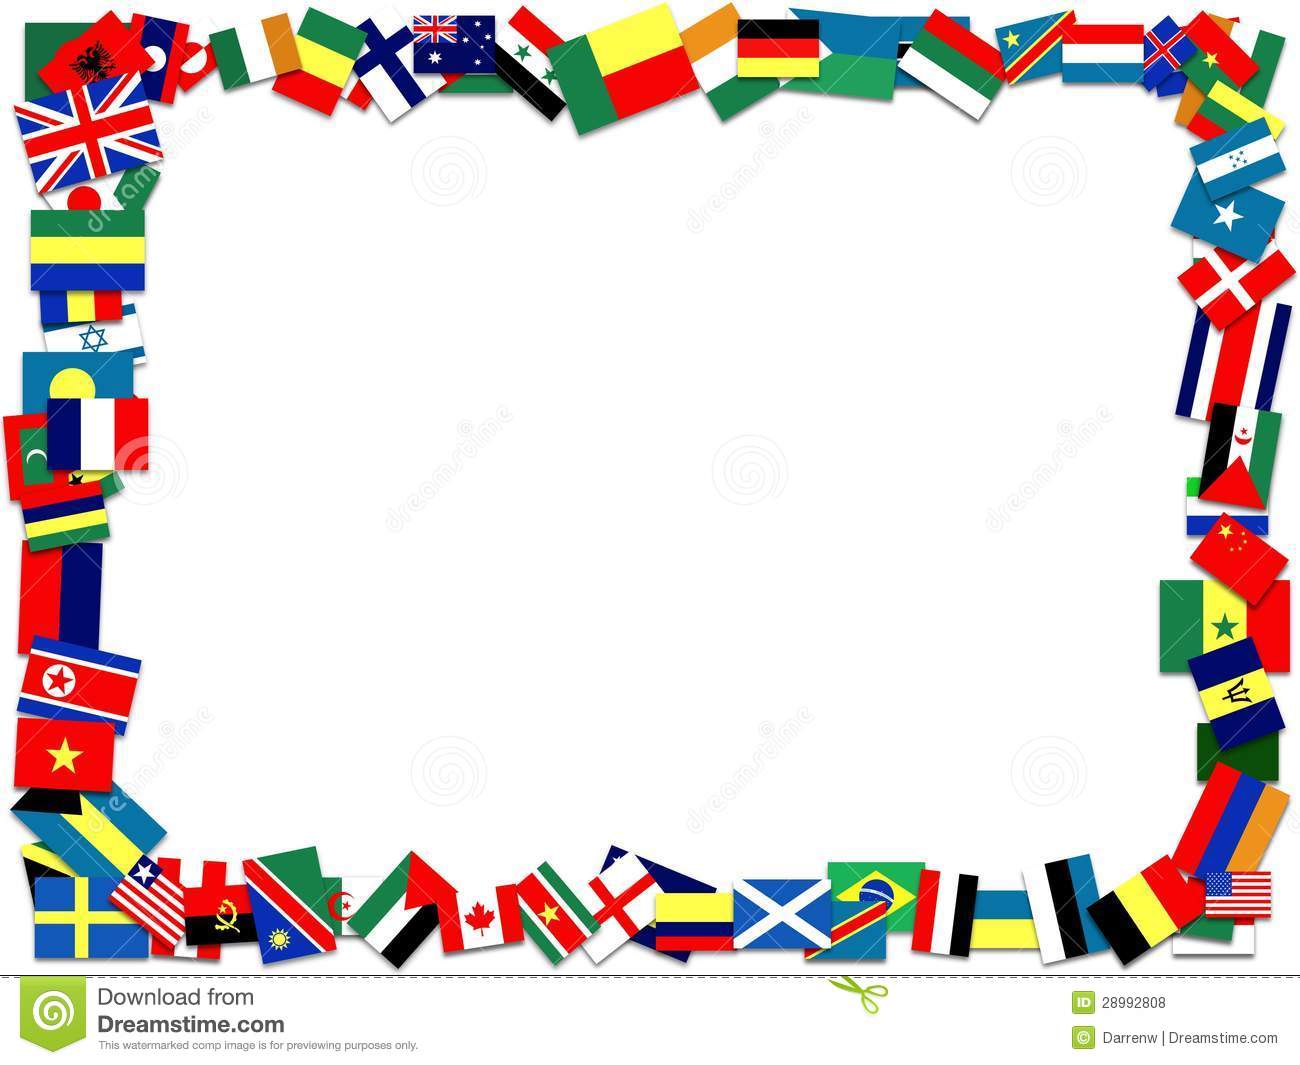 world flag icons frame .